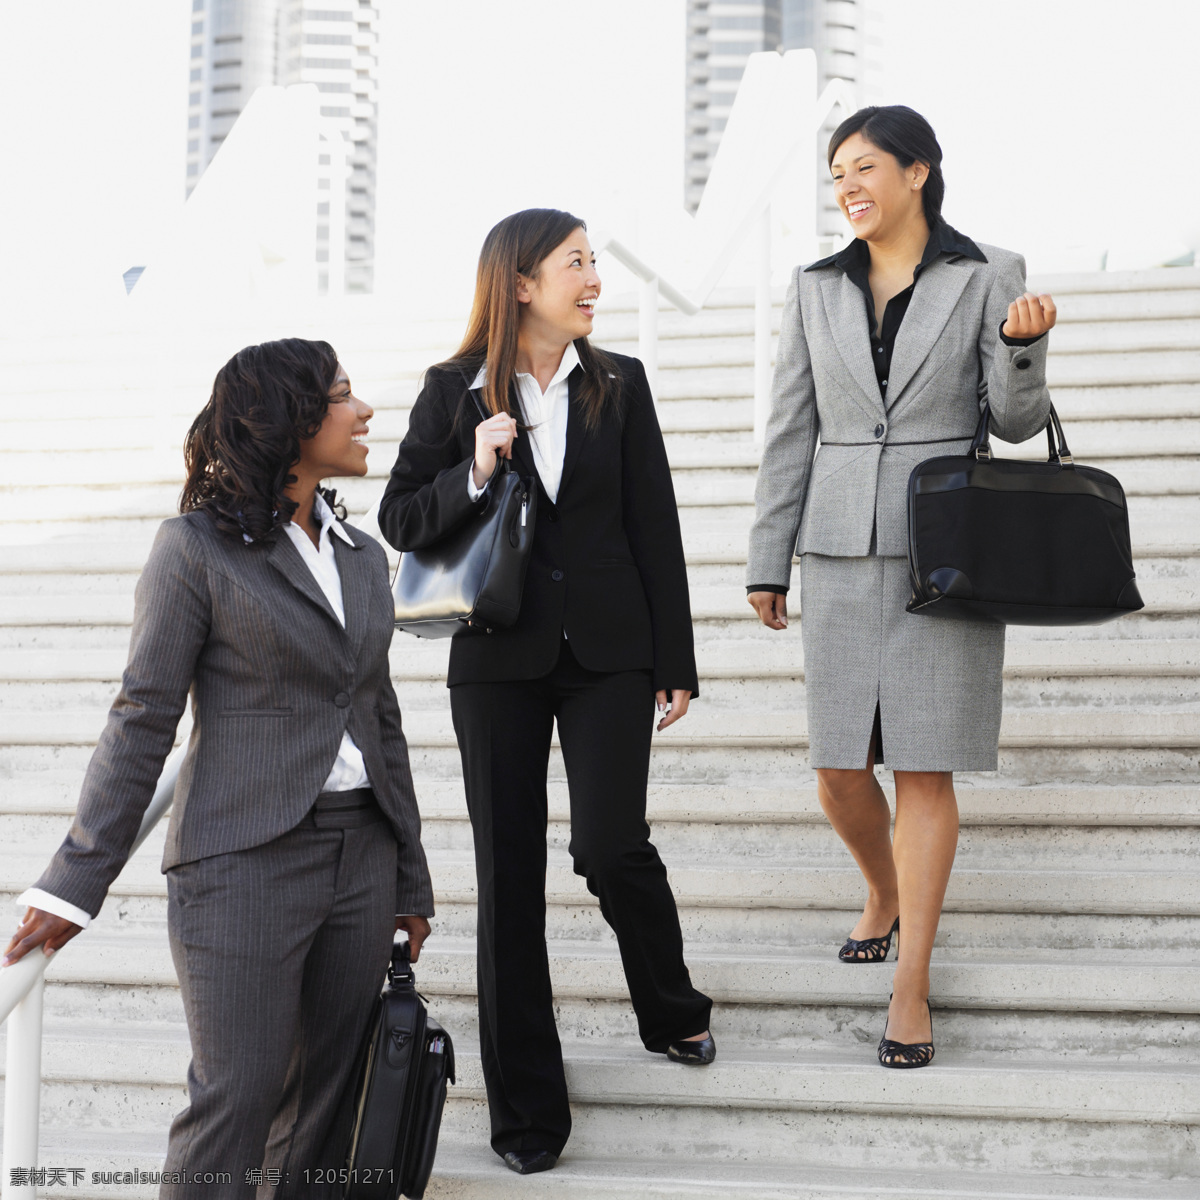 开心 交谈 三个 商务 女人 职业女人 正装女人 办公室职员 下楼梯 开心交谈 办公女人 商务人士 人物图片